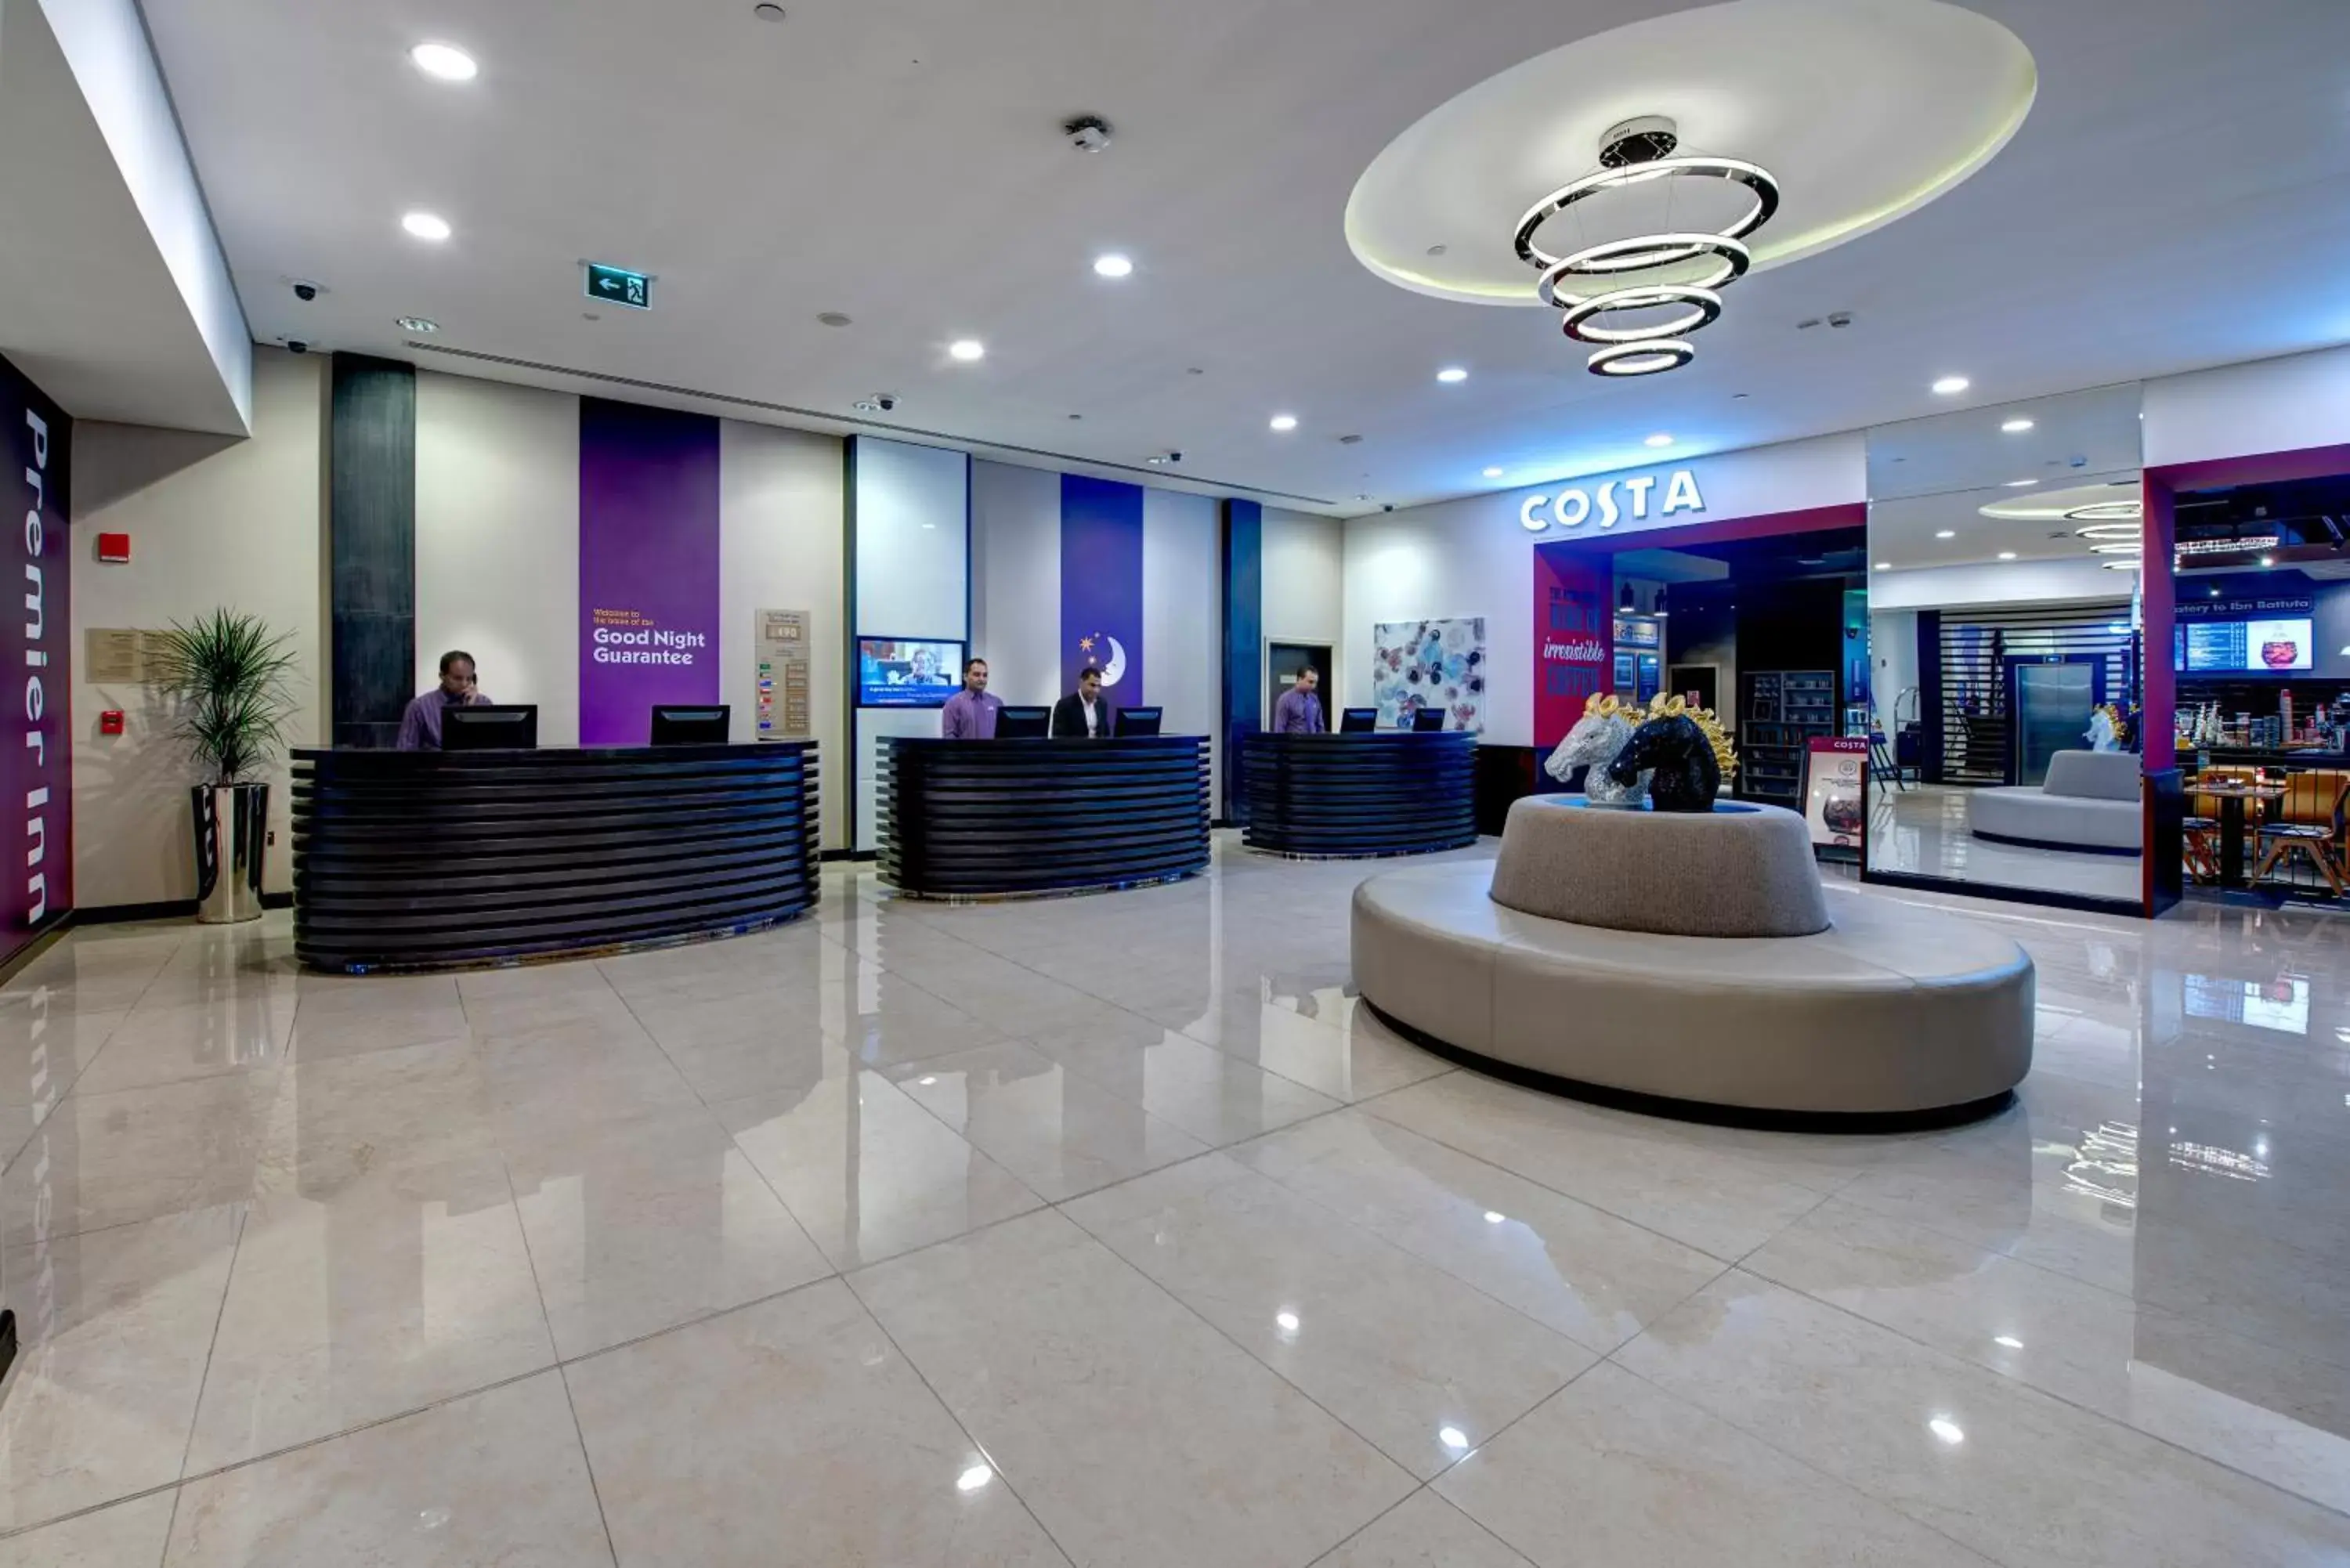 Lobby or reception, Lobby/Reception in Premier Inn Dubai Ibn Battuta Mall